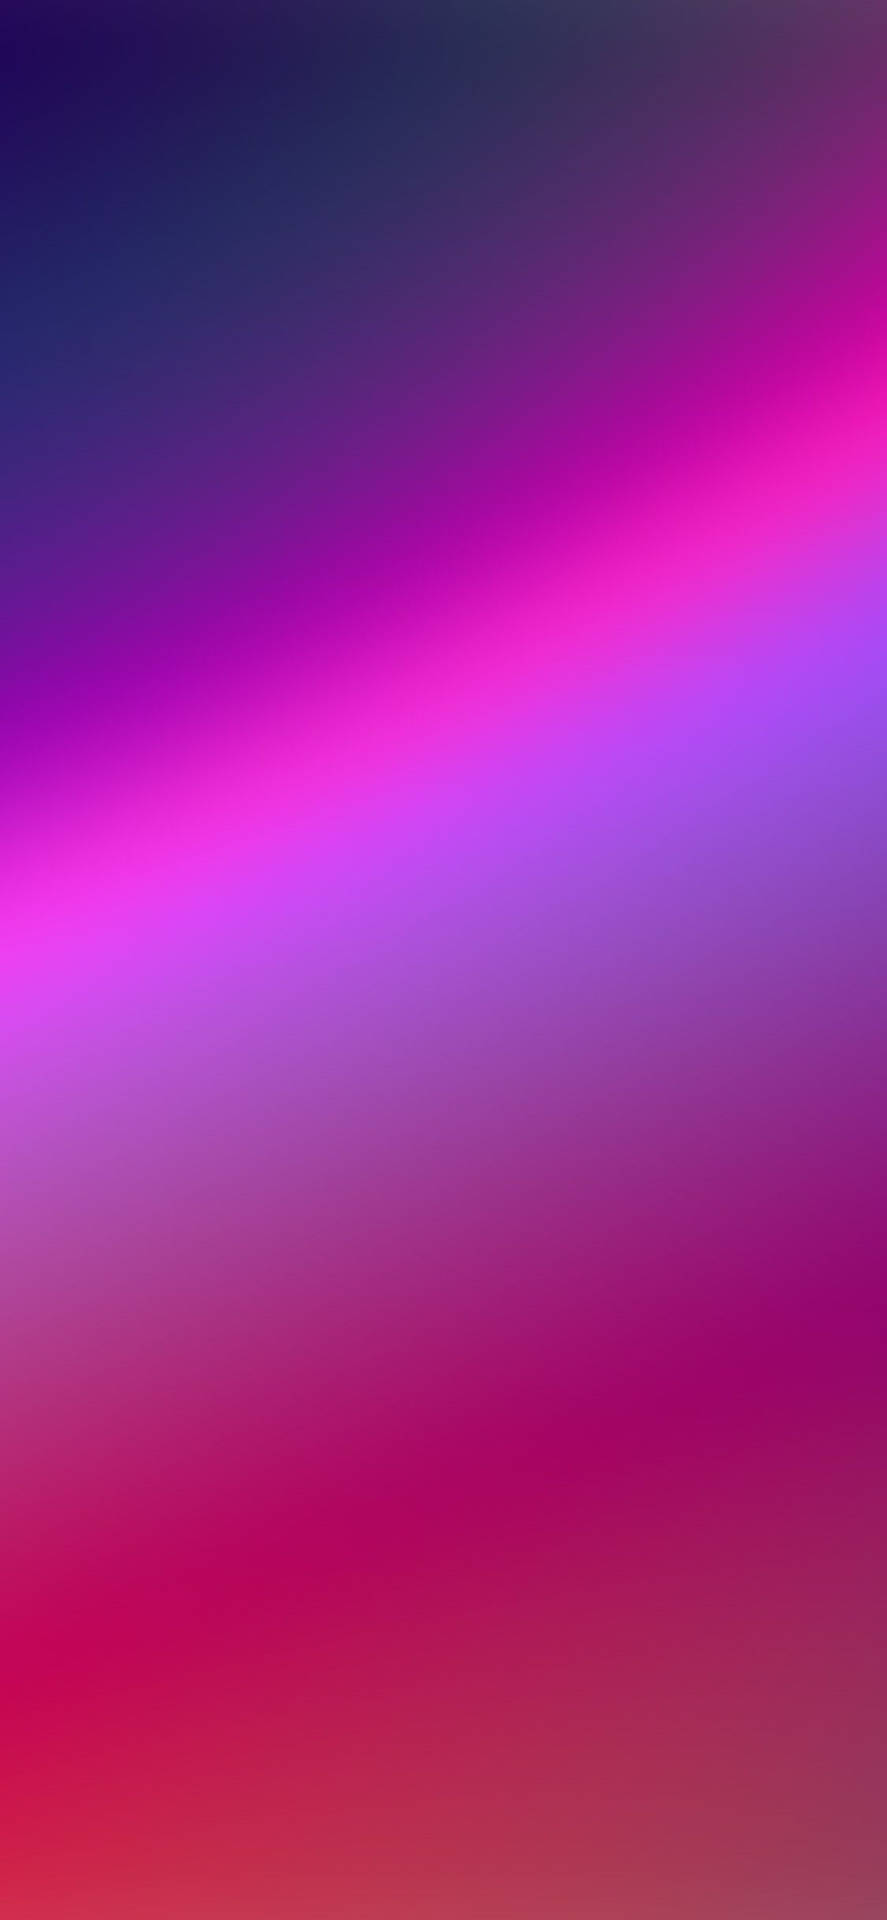 Neon Pink Gradient For Phone Wallpaper